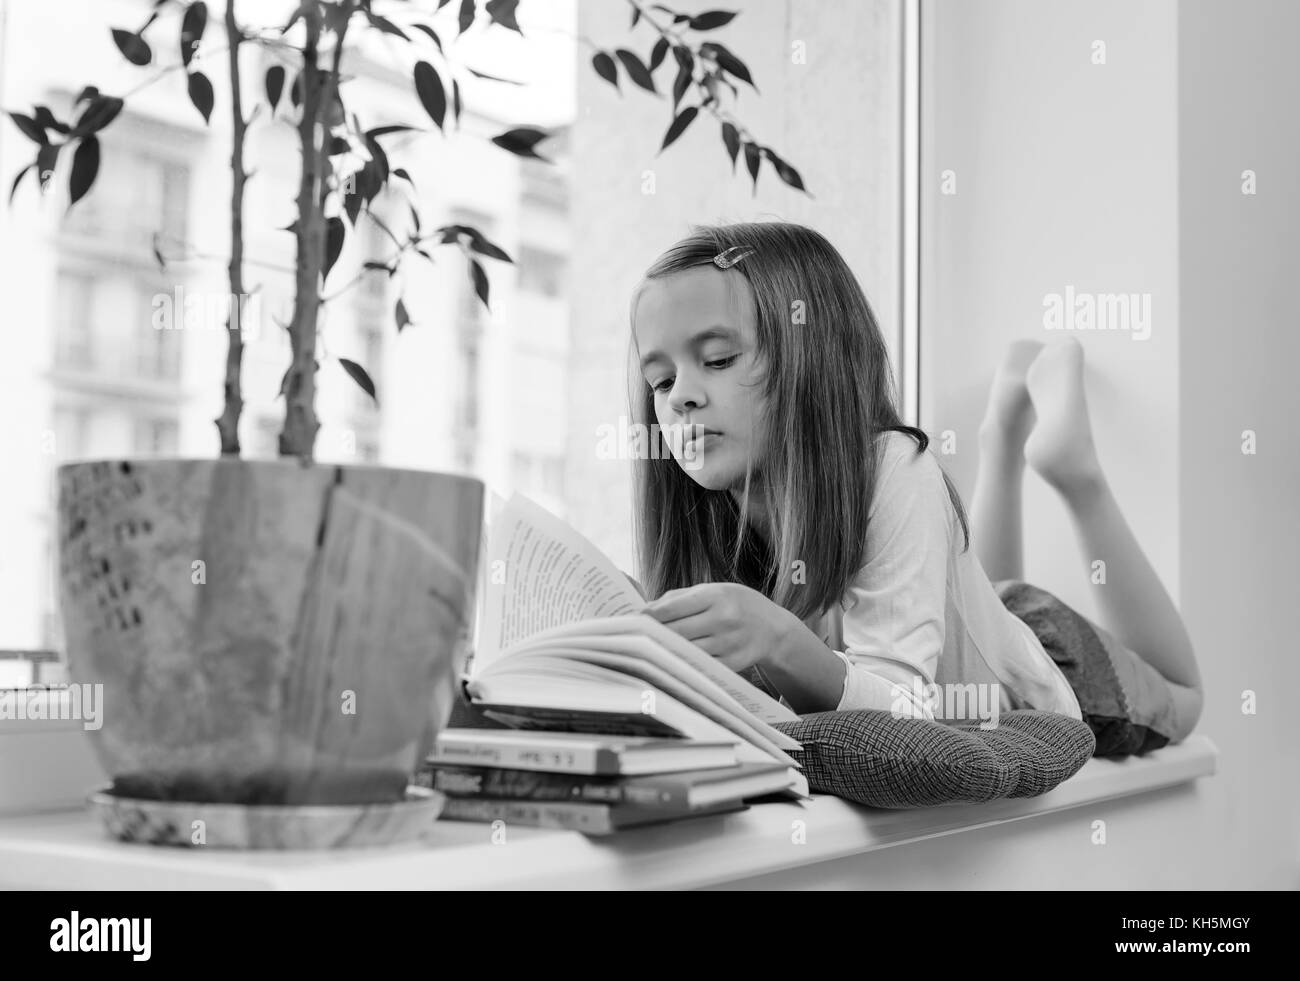 La ragazza è sdraiato sul davanzale della finestra e la lettura di un libro bianco e nero. Foto Stock